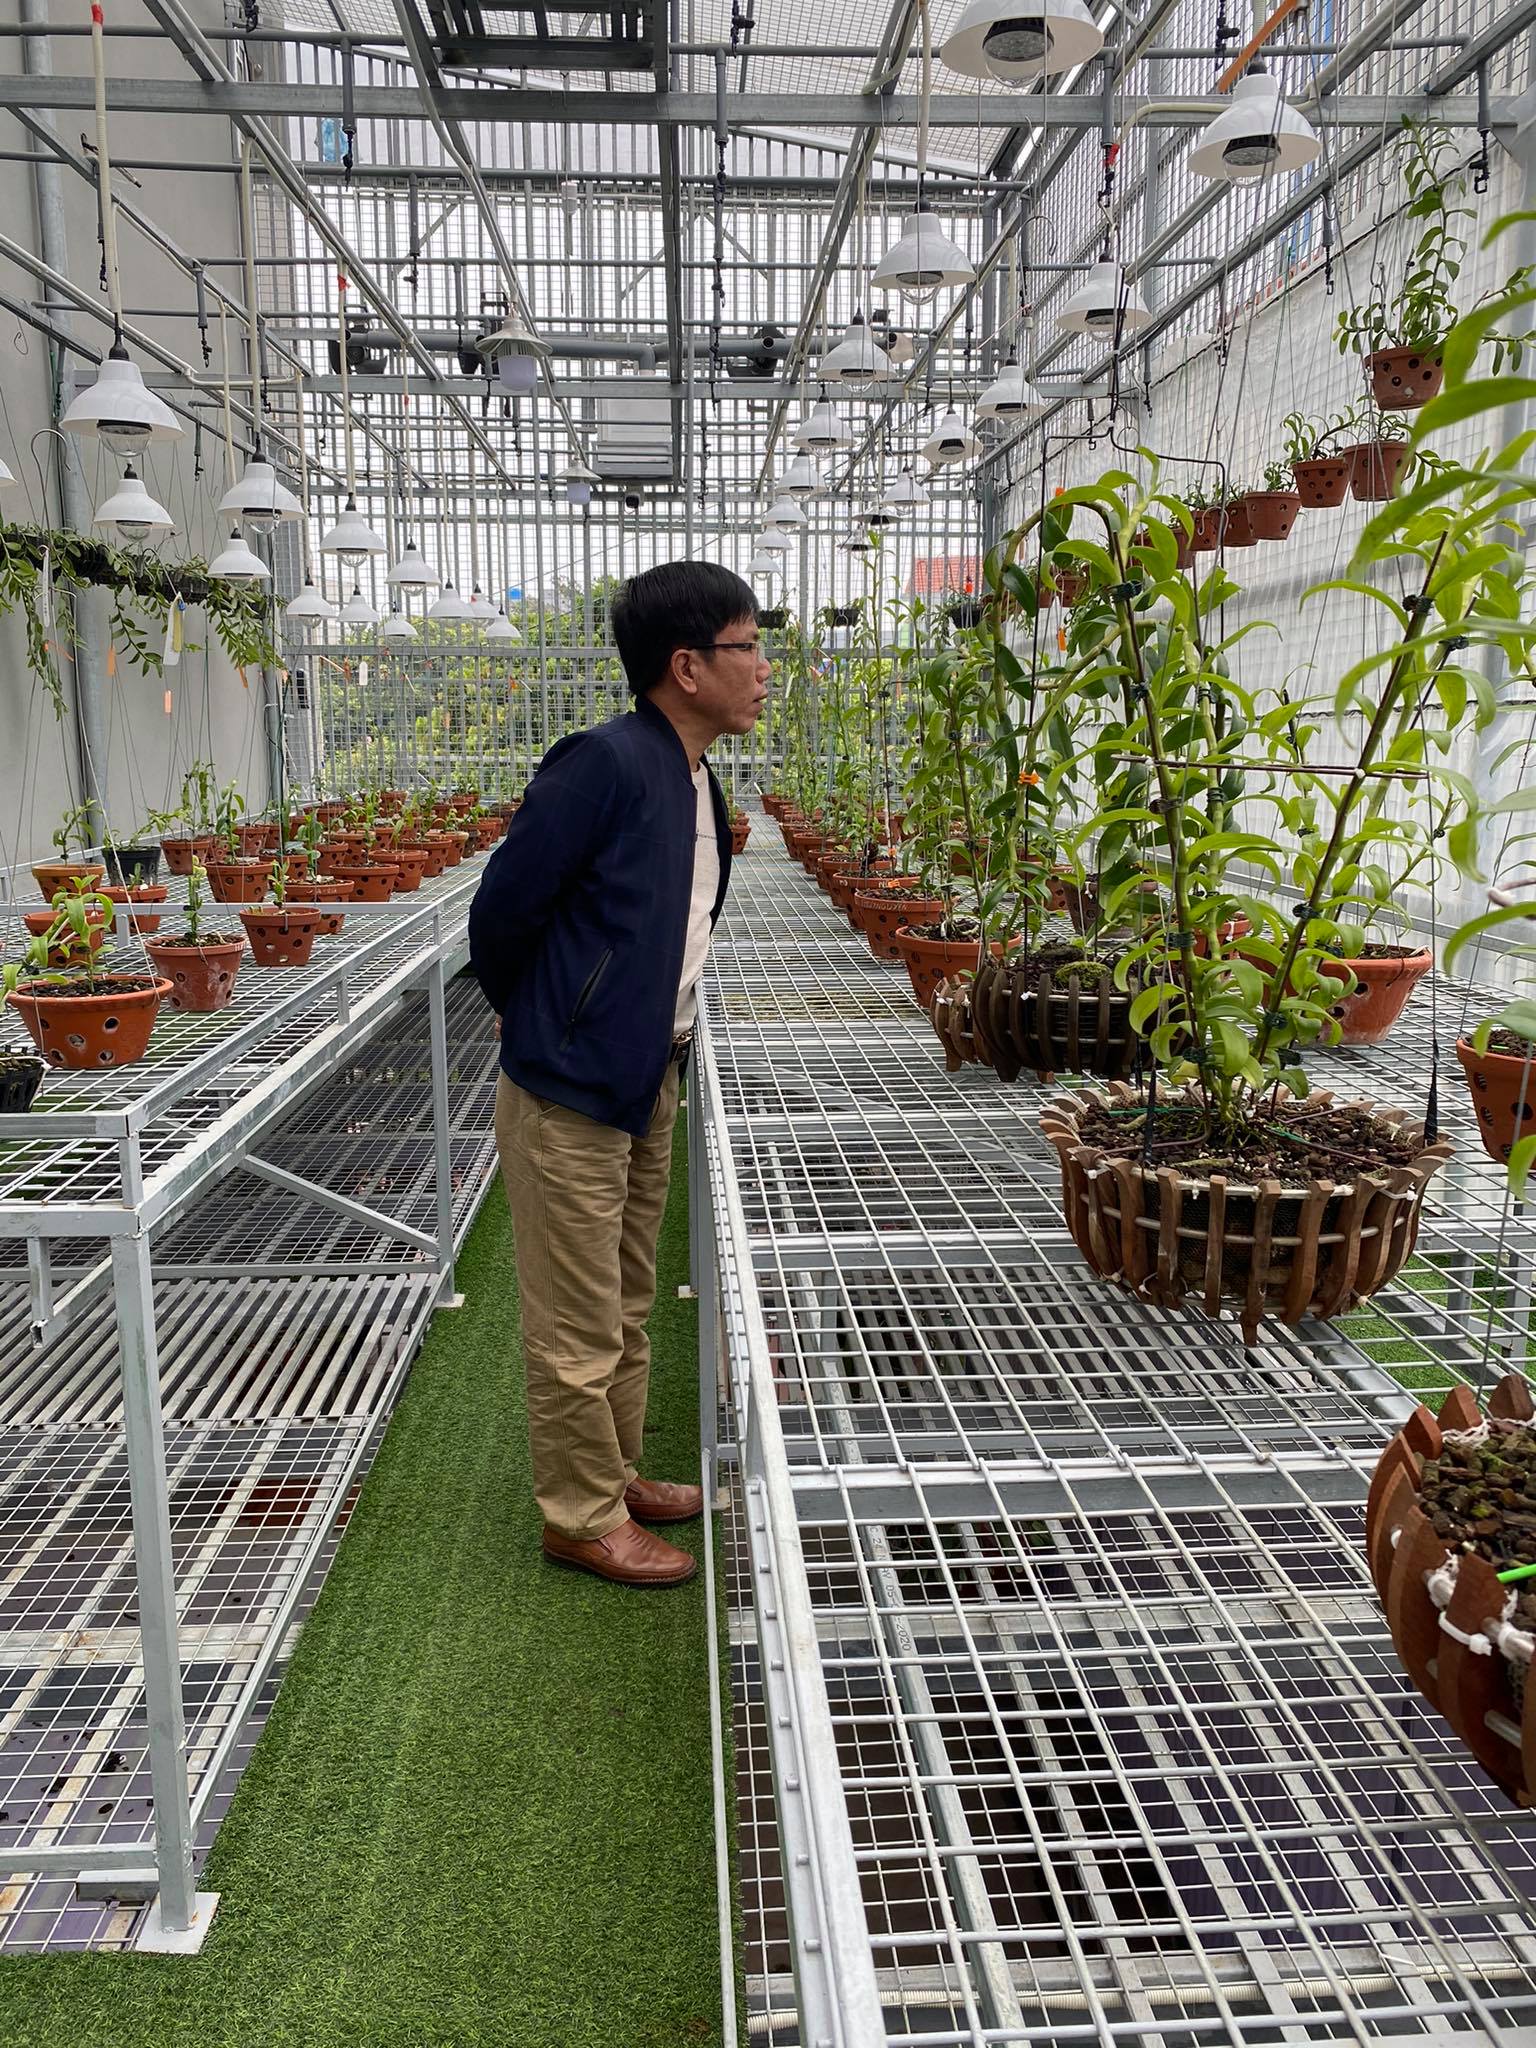 Ông chủ vườn lan đột biến Lê Thành Dư chia sẻ chuyện khởi nghiệp